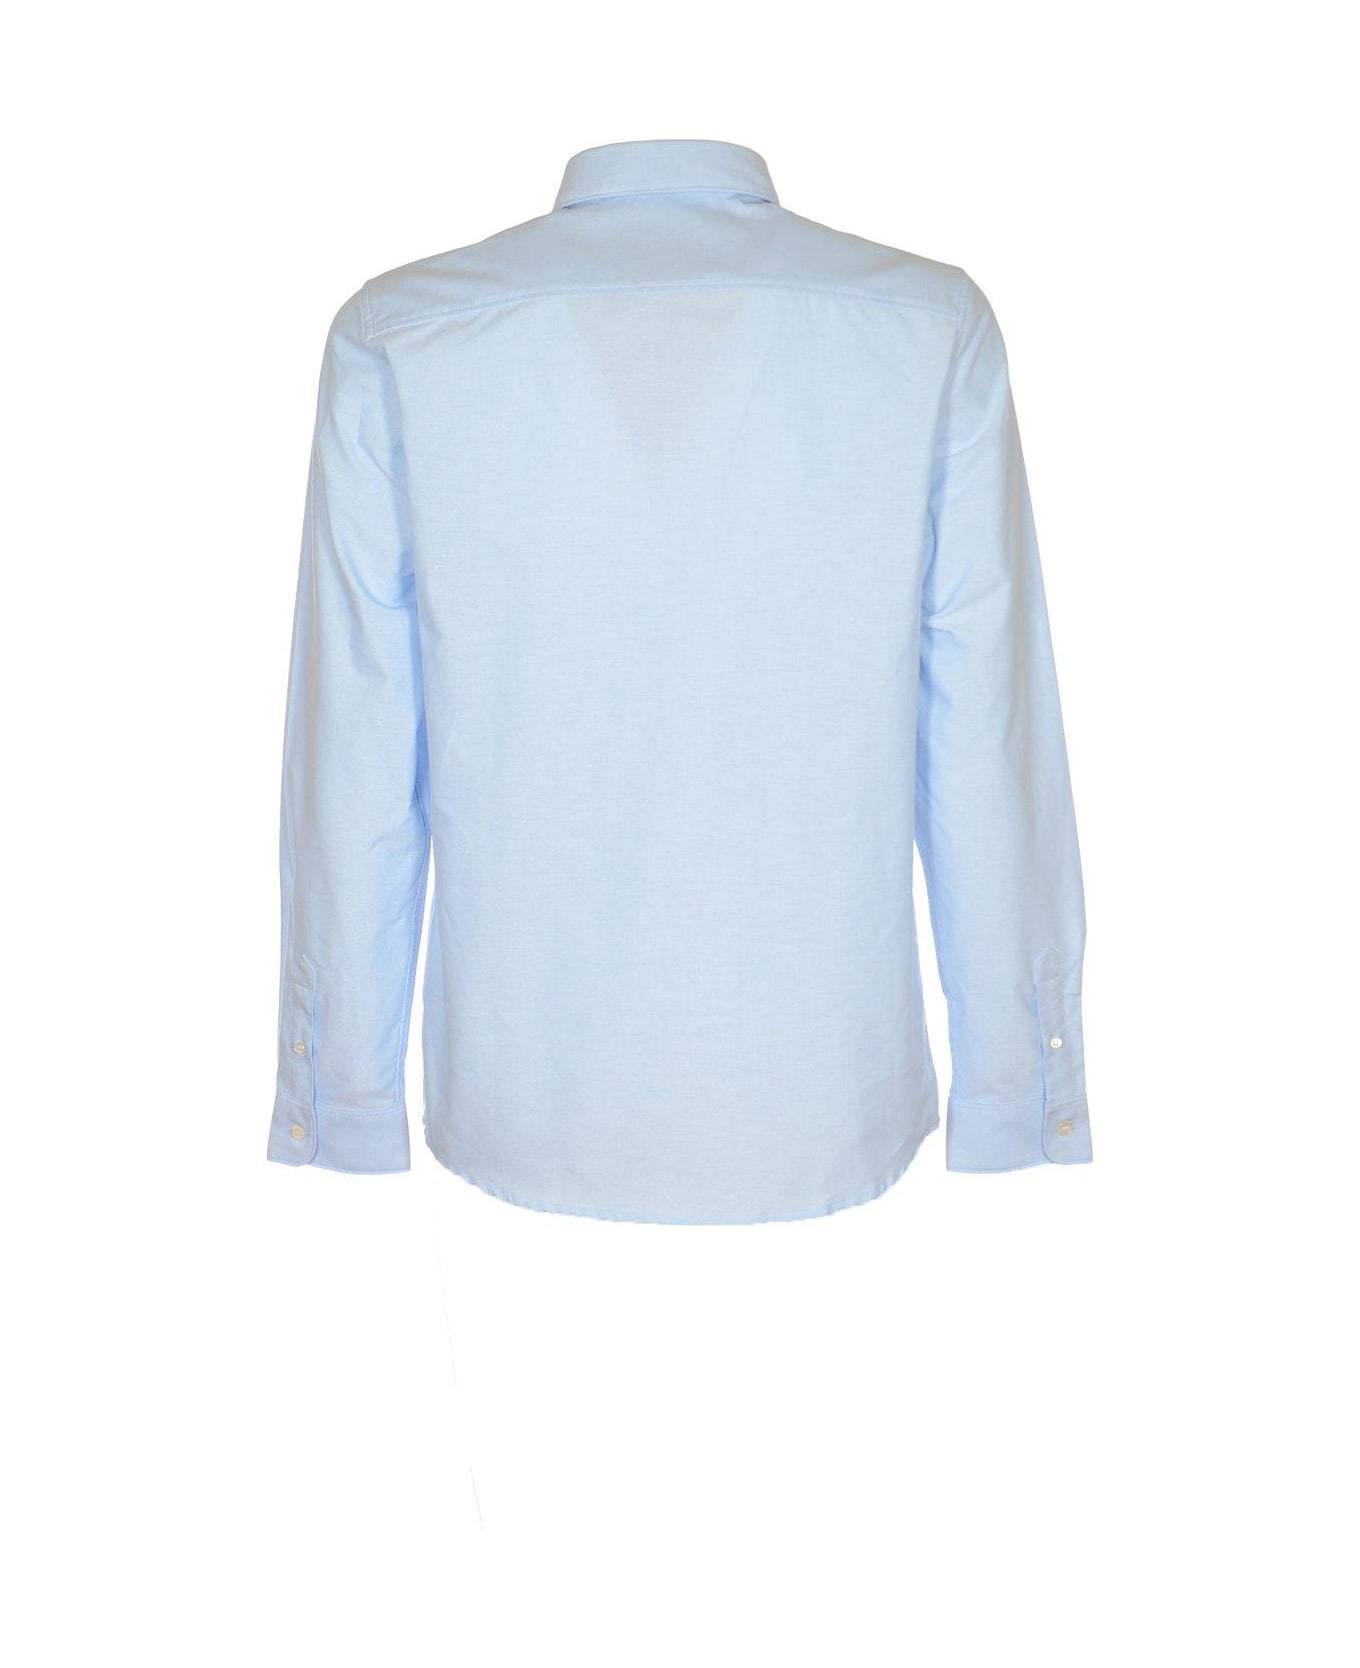 A.P.C. Buttoned Long-sleeved Shirt - Light Blue